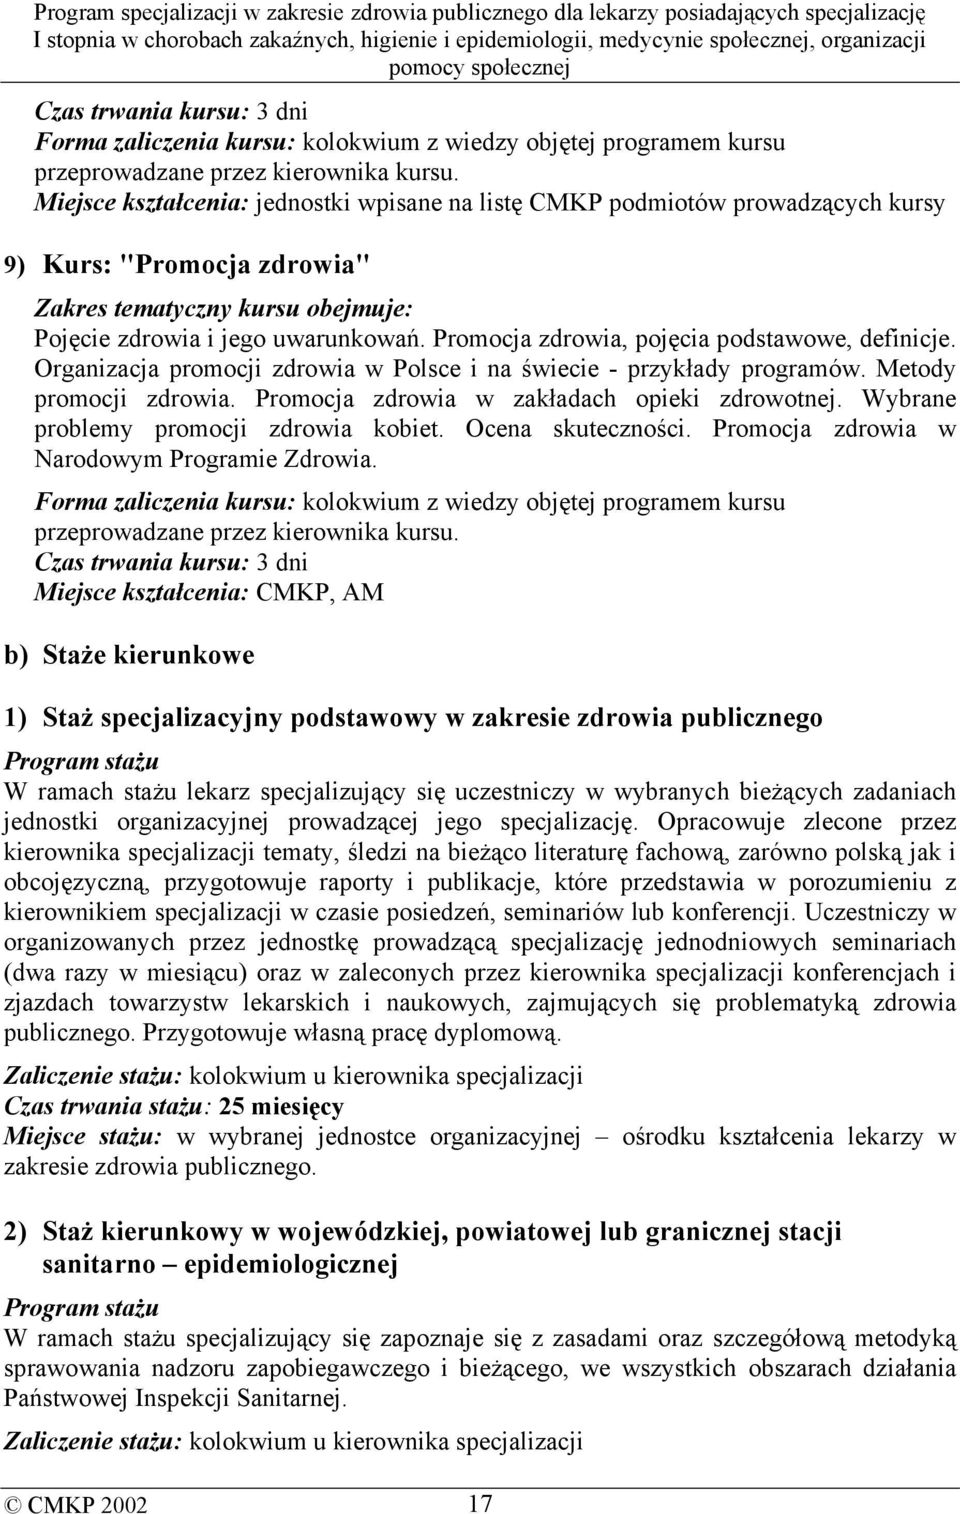 Promocja zdrowia, pojęcia podstawowe, definicje. Organizacja promocji zdrowia w Polsce i na świecie - przykłady programów. Metody promocji zdrowia. Promocja zdrowia w zakładach opieki zdrowotnej.